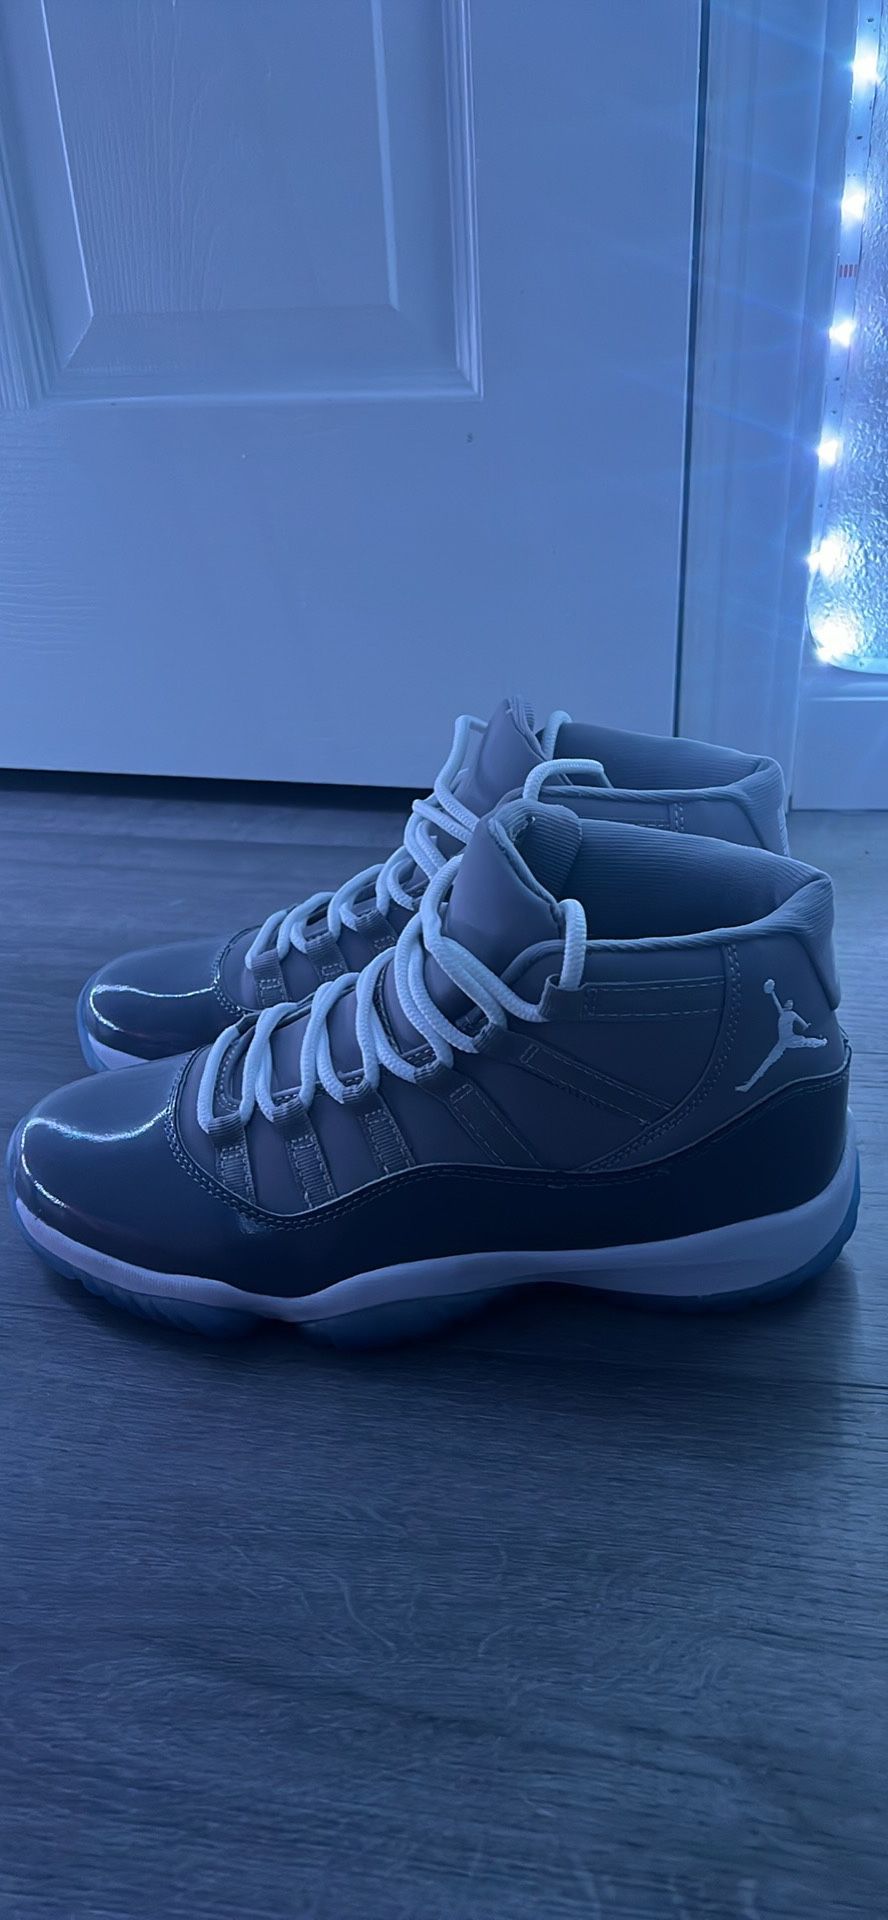 Air Jordan 11 “cool grey”